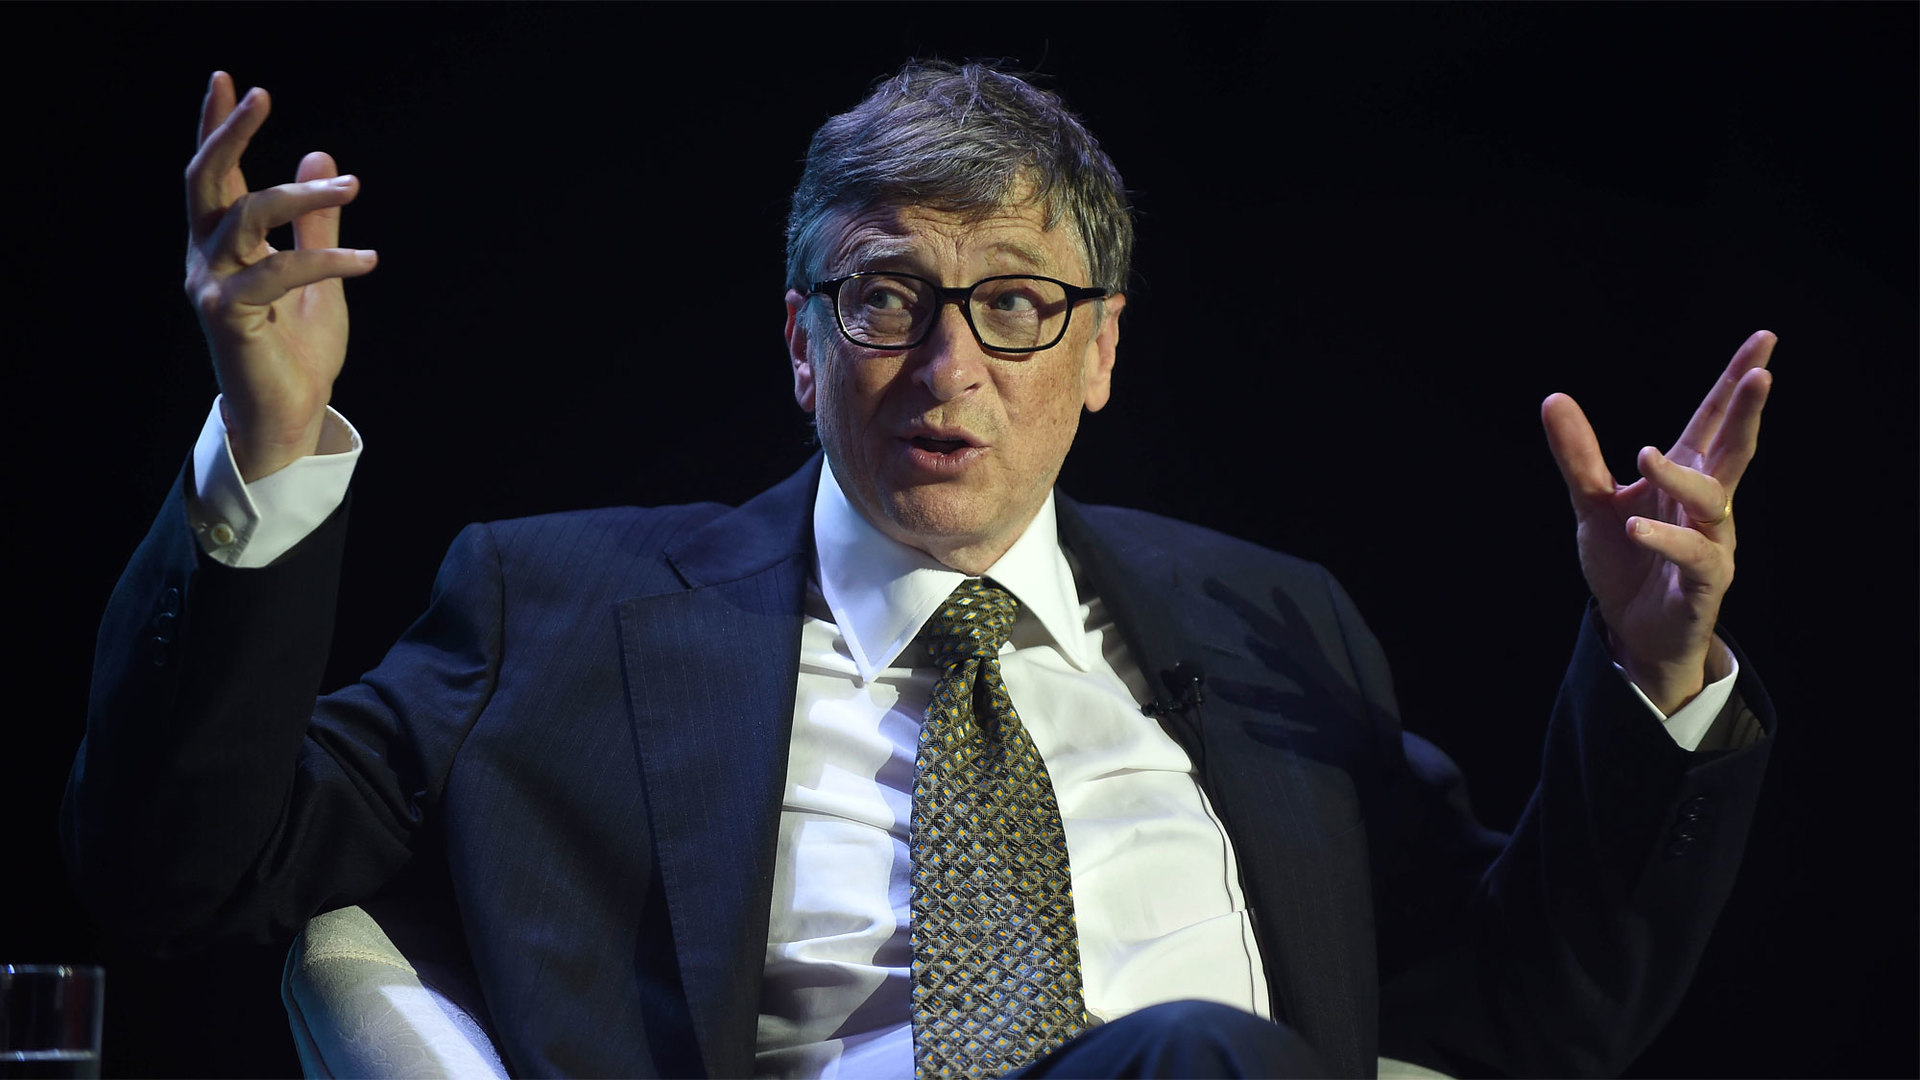 Первый миллиардер в мире. Самый богатый человек в мире Триллионер. Гейтс Билл благотворительность 30 млн. Билл Гейтс и другие миллиардеры.